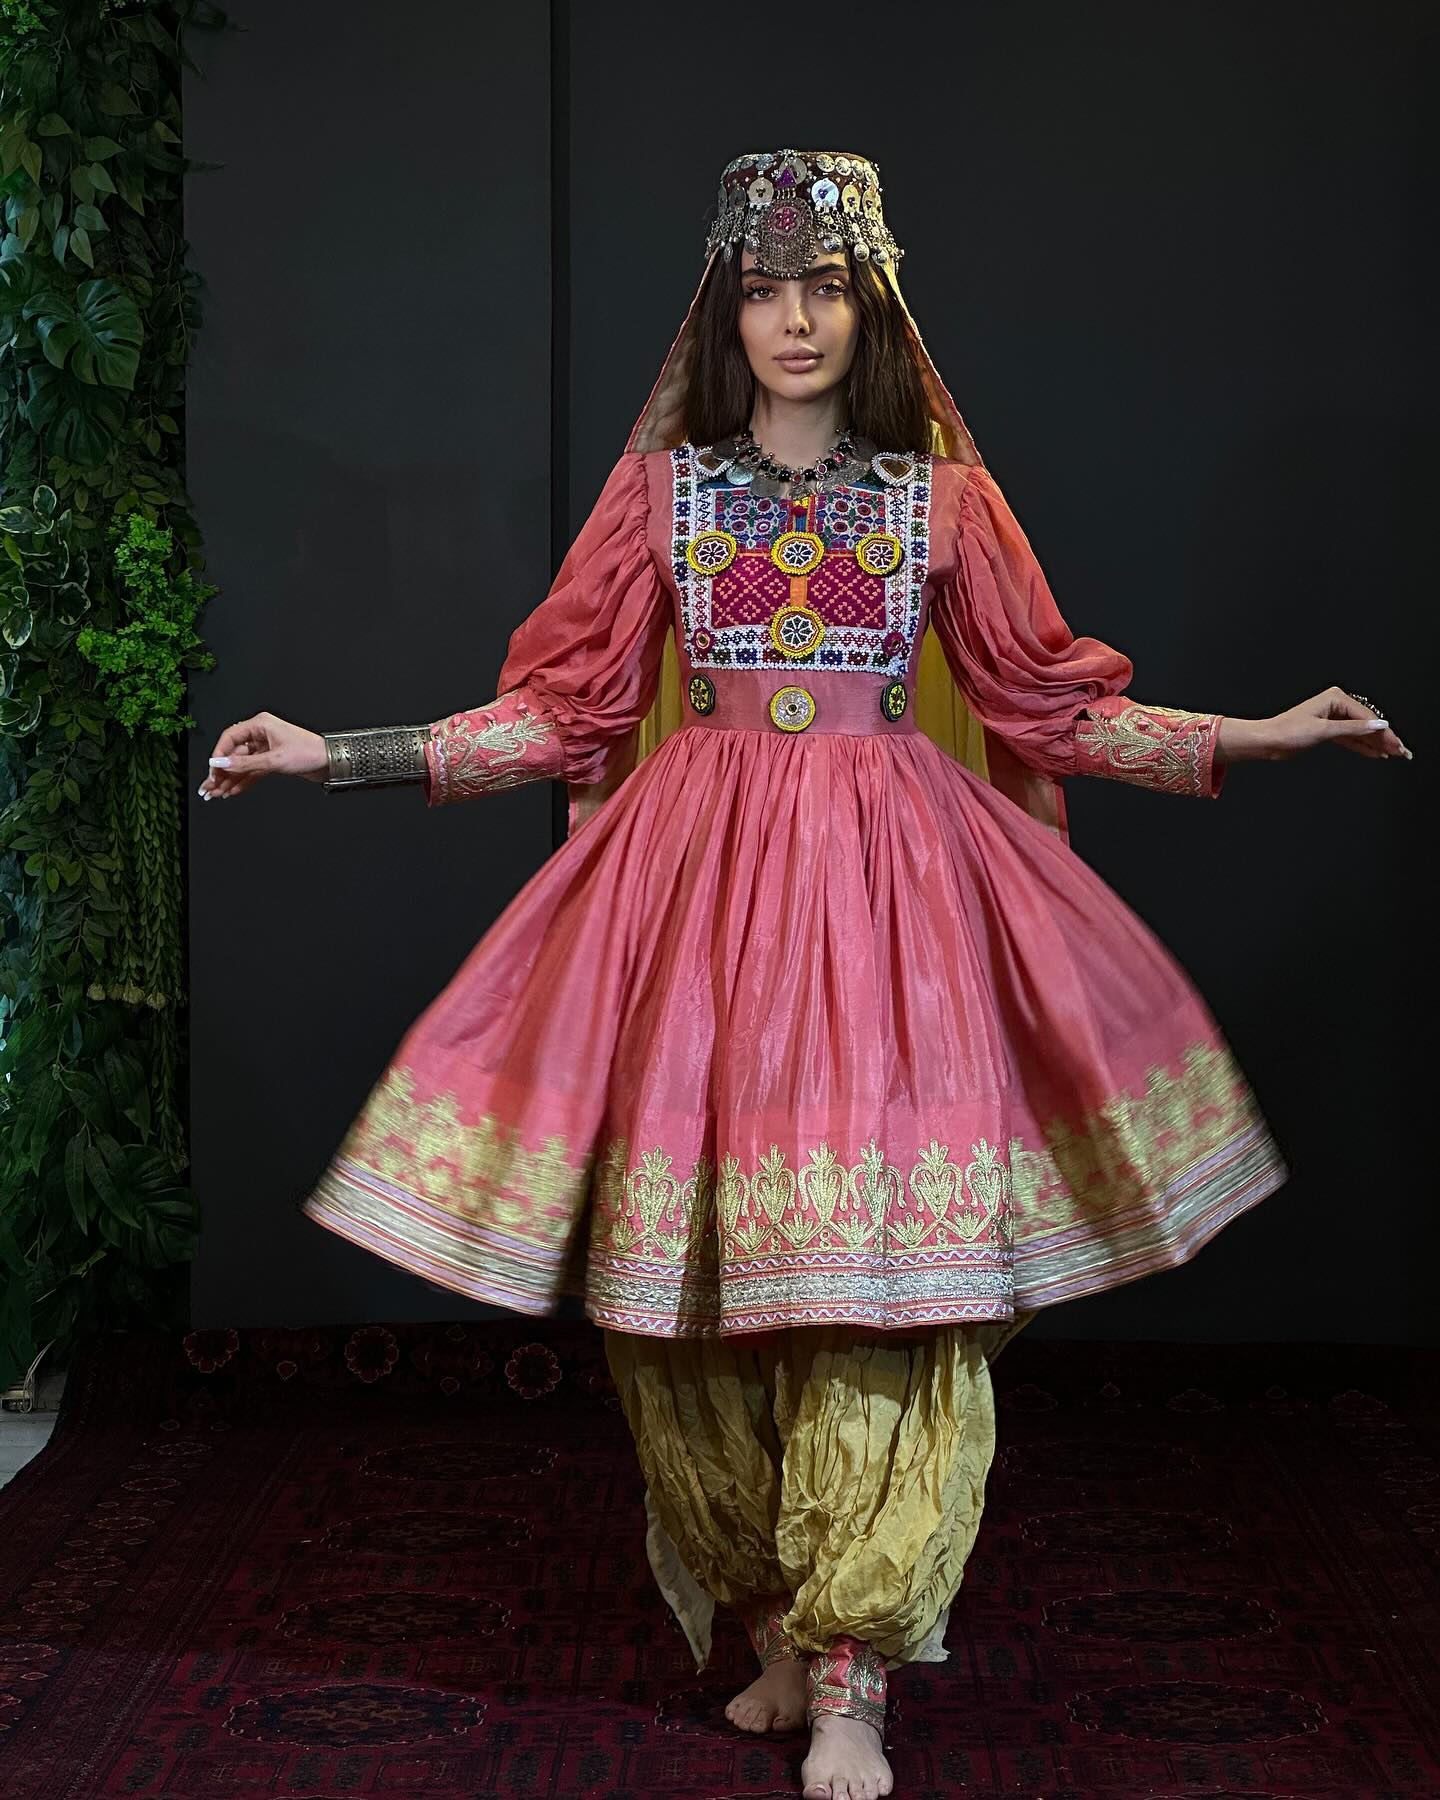 Afghani vintage dresses